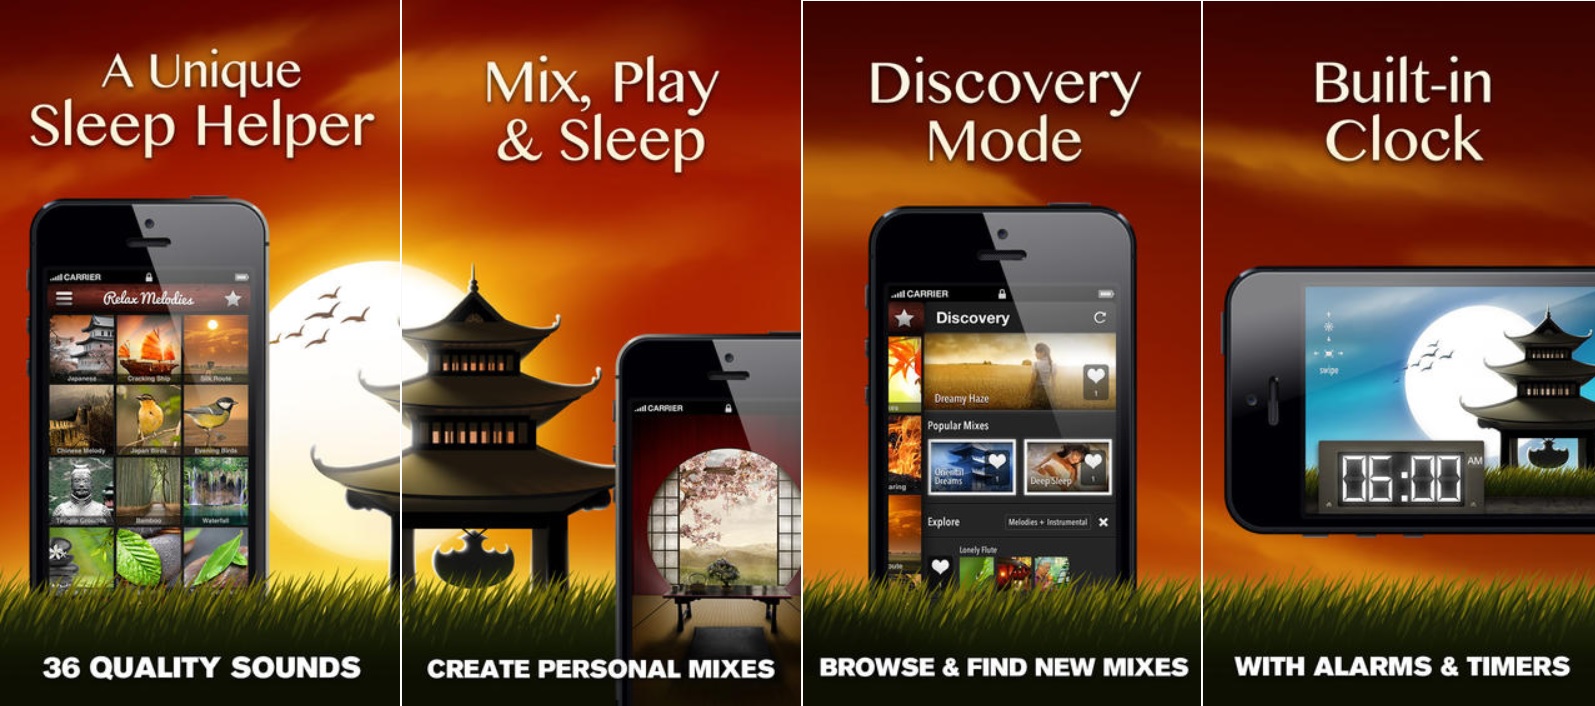 Sonidos orientales de relajación, gratis para iPhone, iPad, iPod, Android